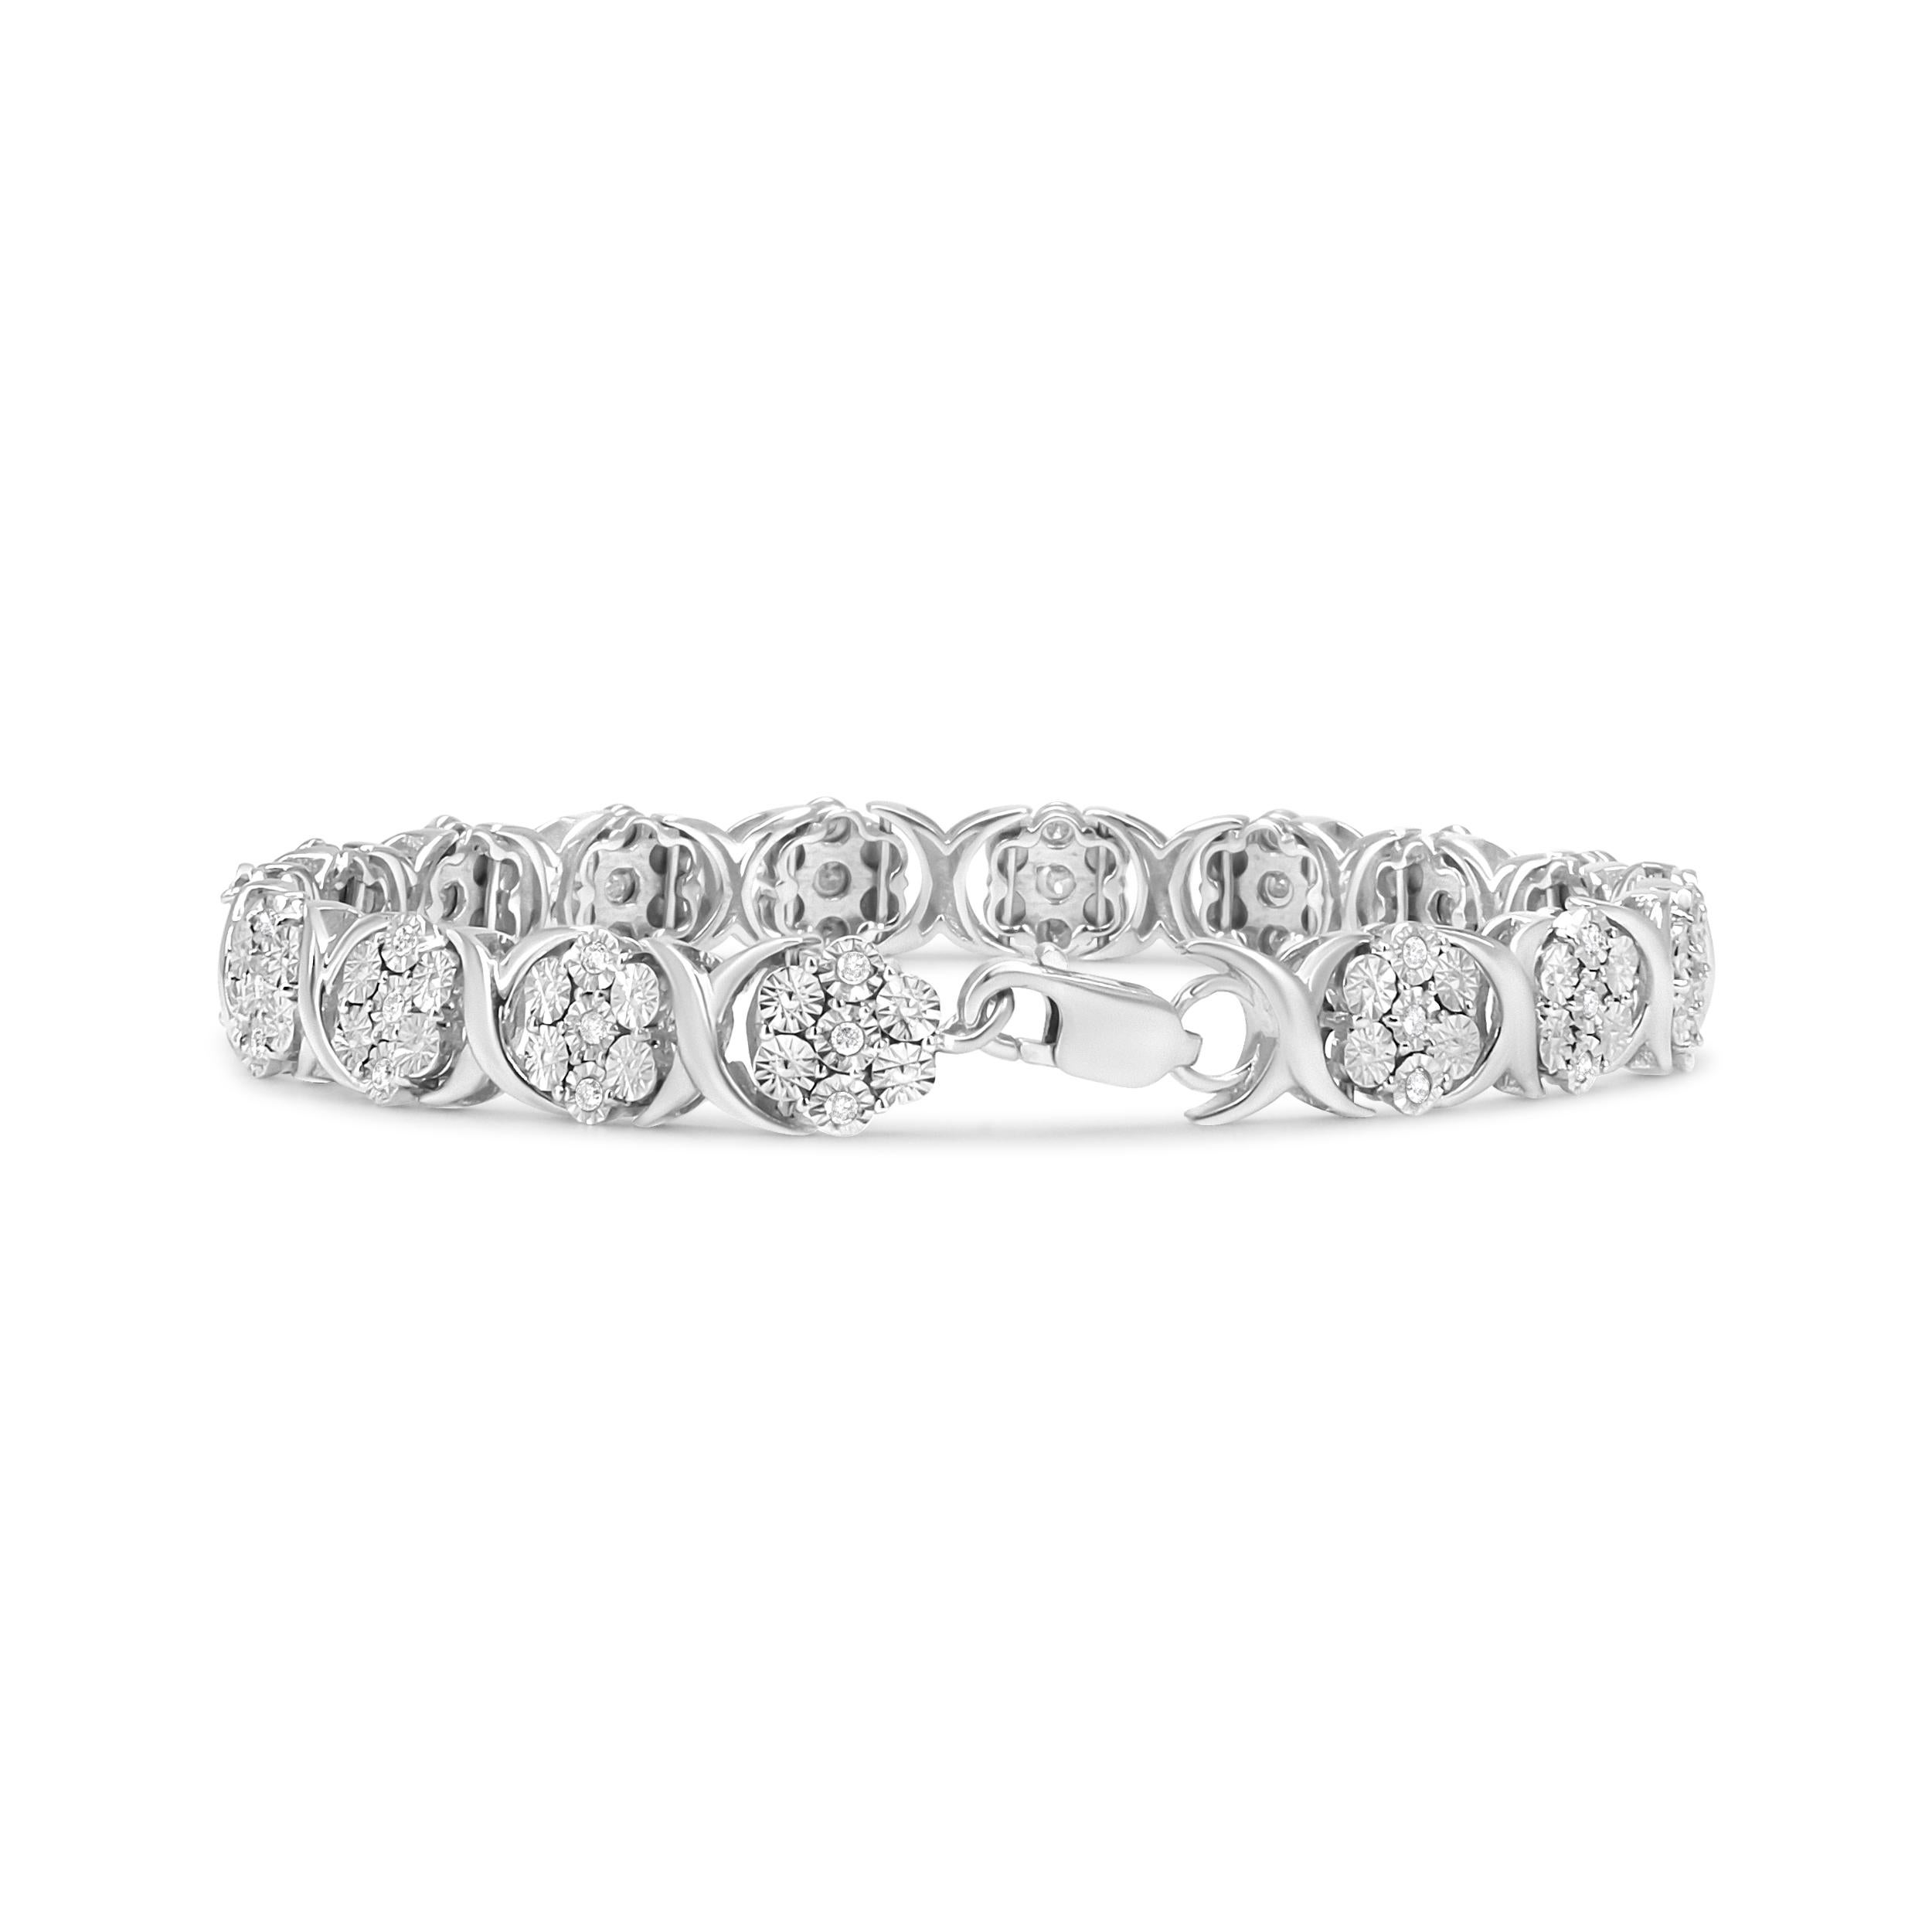 Une version différente du bracelet en diamants classique, ce design accrocheur est mis en valeur par les 51 diamants ronds naturels en serti miracle qui forment de magnifiques grappes florales. Logée dans une chaîne en argent sterling 925, cette